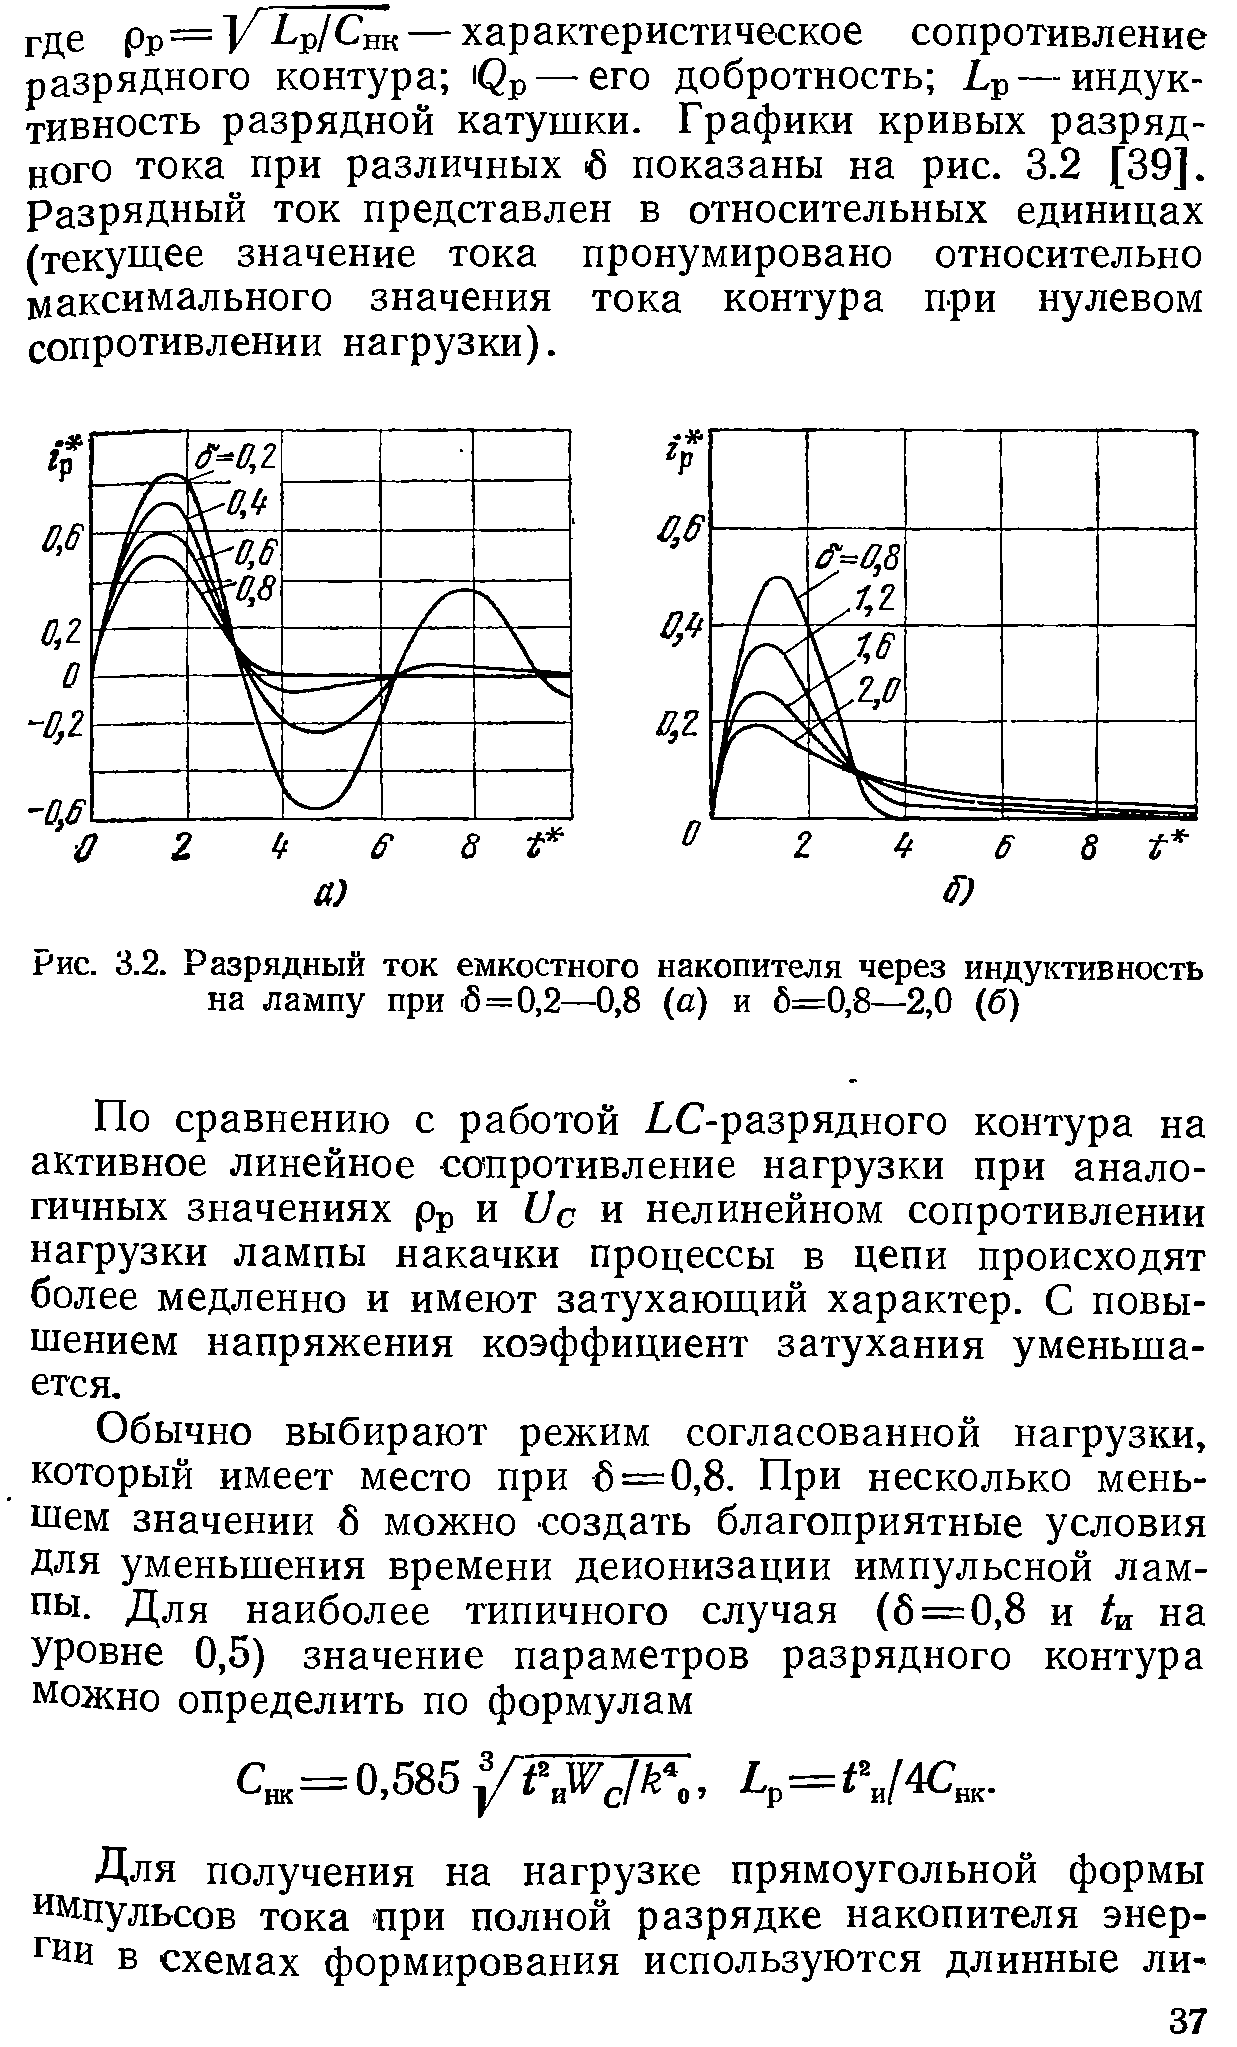 Рис. 3.2. Разрядный ток емкостного накопителя через индуктивность на лампу при 6=0,2—0,8 (а) и 6=0,8—2,0 (б)
